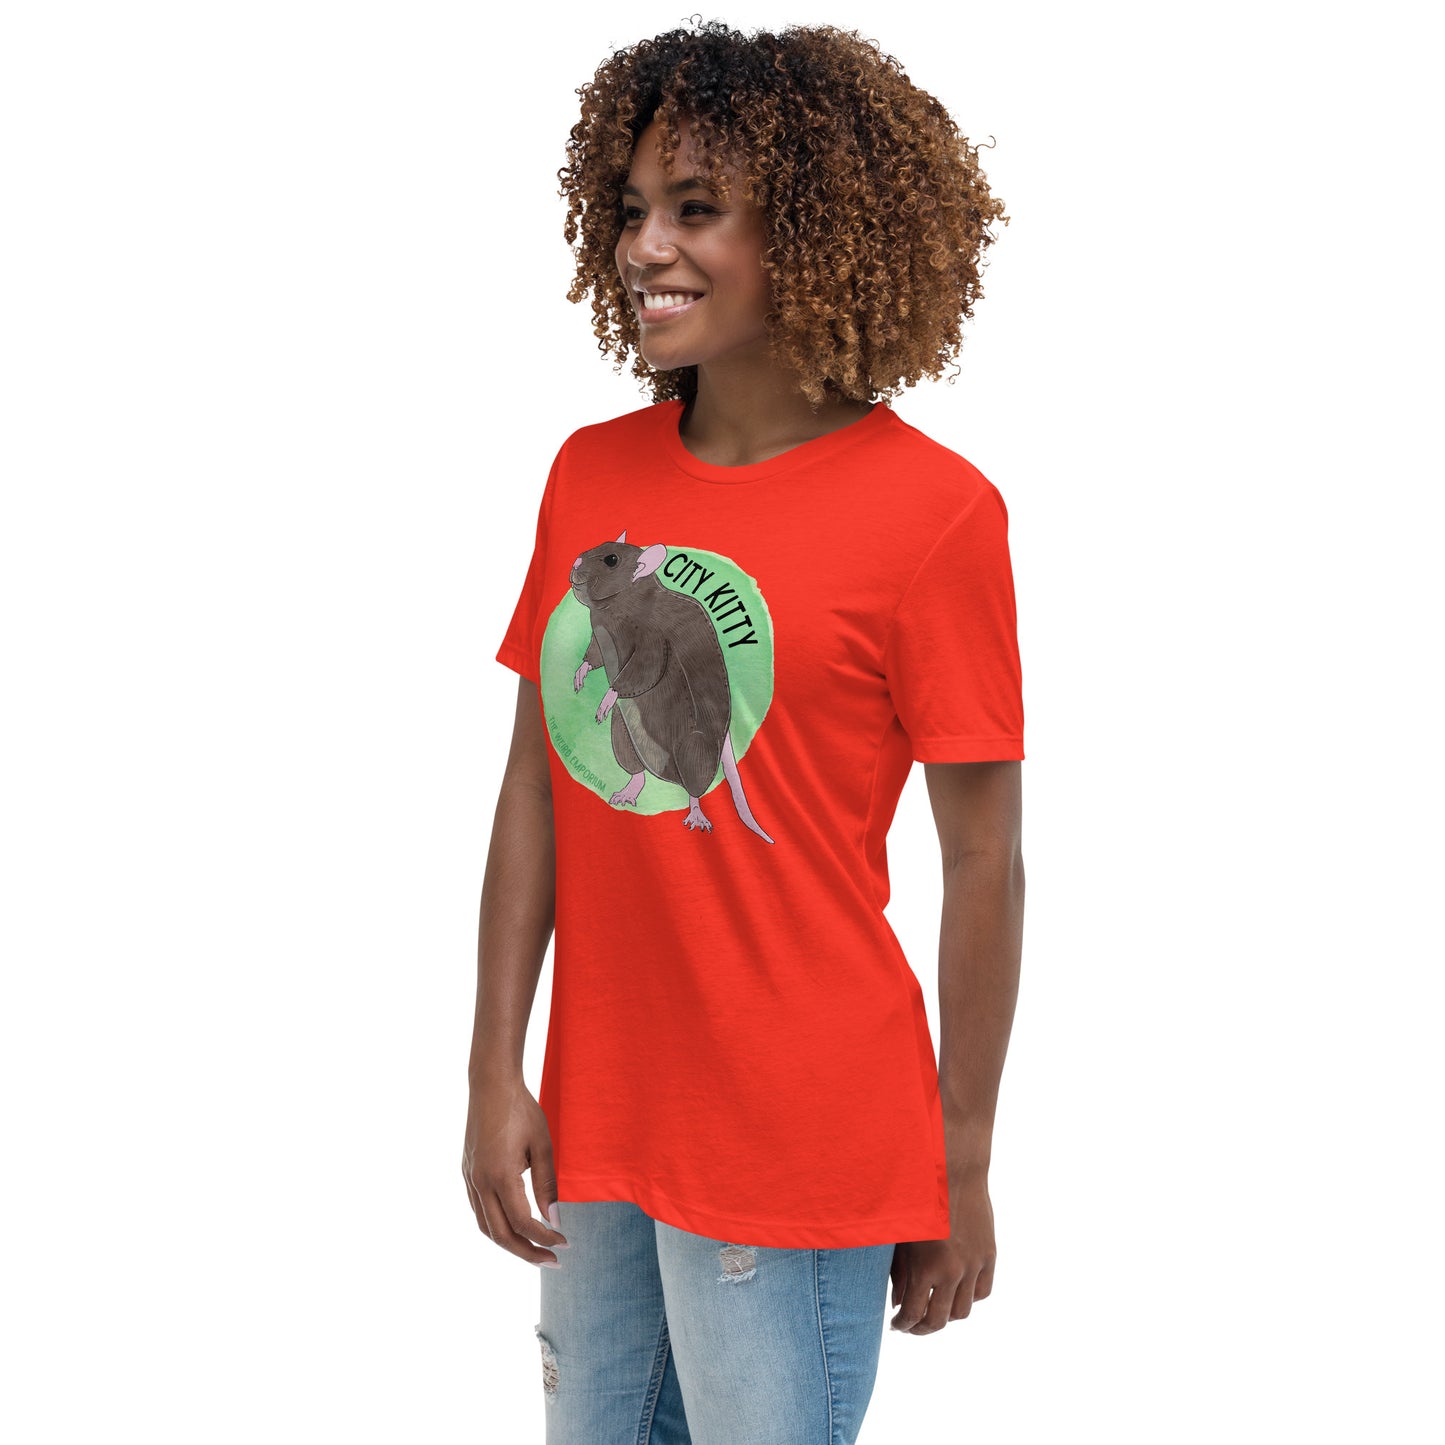 City Kitty T-Shirt (Women's Relaxed T-Shirt)